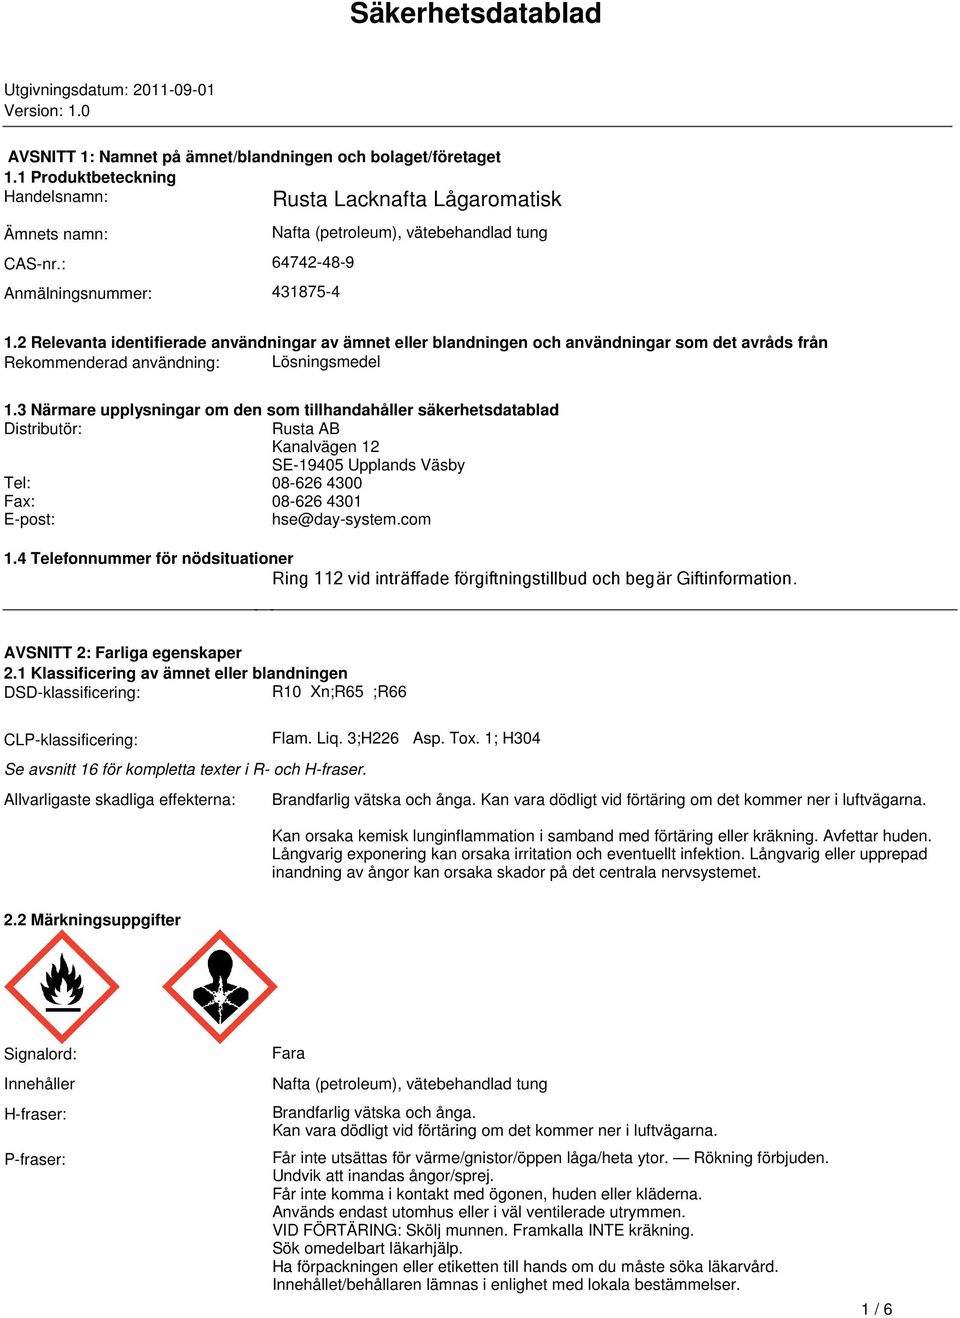 Rekommenderad användning: Lösningsmedel 13 Närmare upplysningar om den som tillhandahåller säkerhetsdatablad Distributör: Rusta AB Kanalvägen 12 SE-19405 Upplands Väsby Tel: 08-626 4300 Fax: 08-626